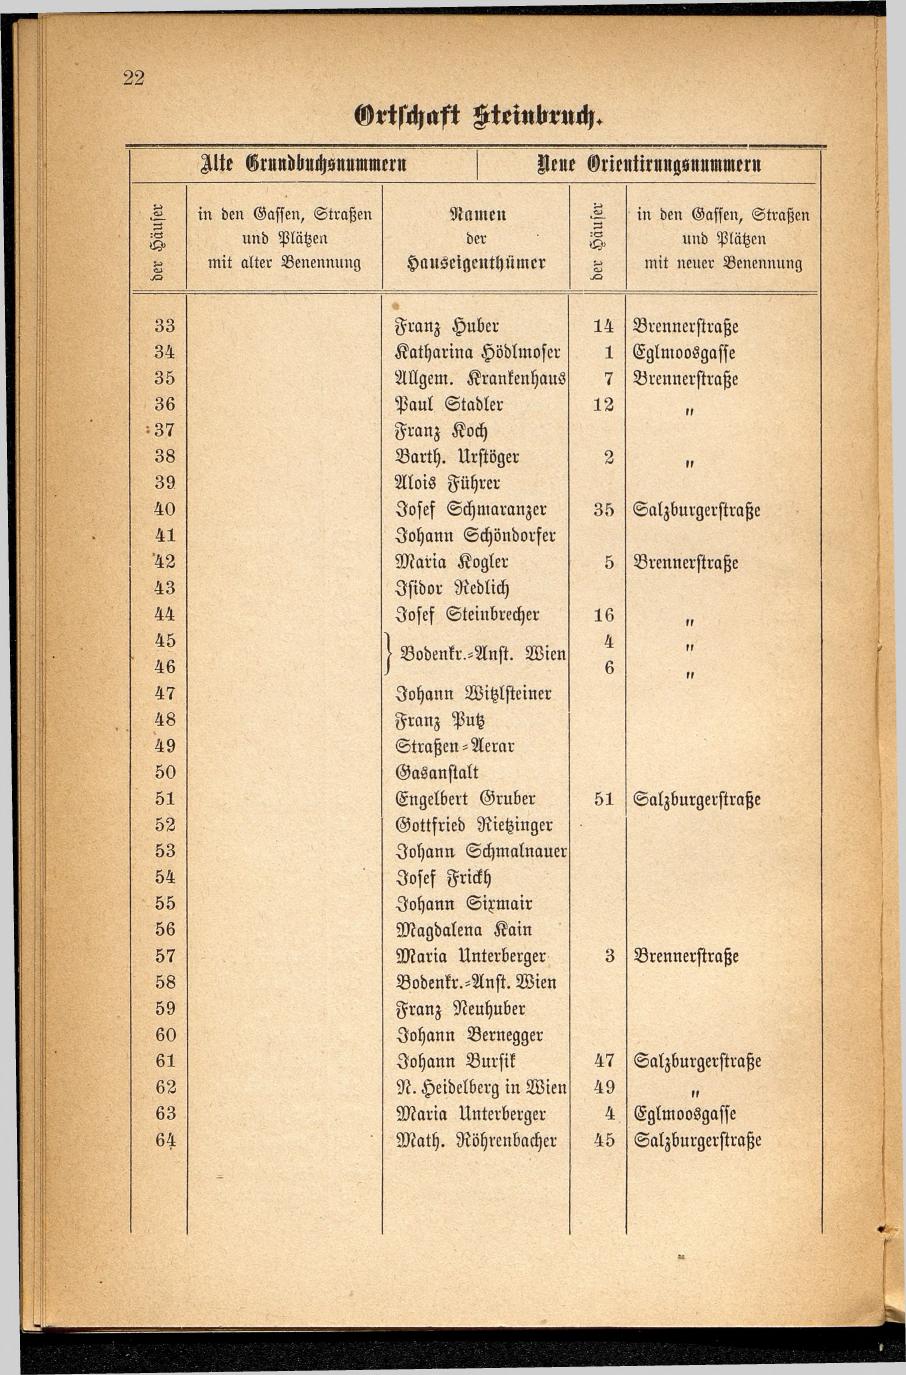 Häuser-Verzeichnis des Marktes und Kurortes Ischl nach den neuen Orientirungsnummern 1881 - Seite 26